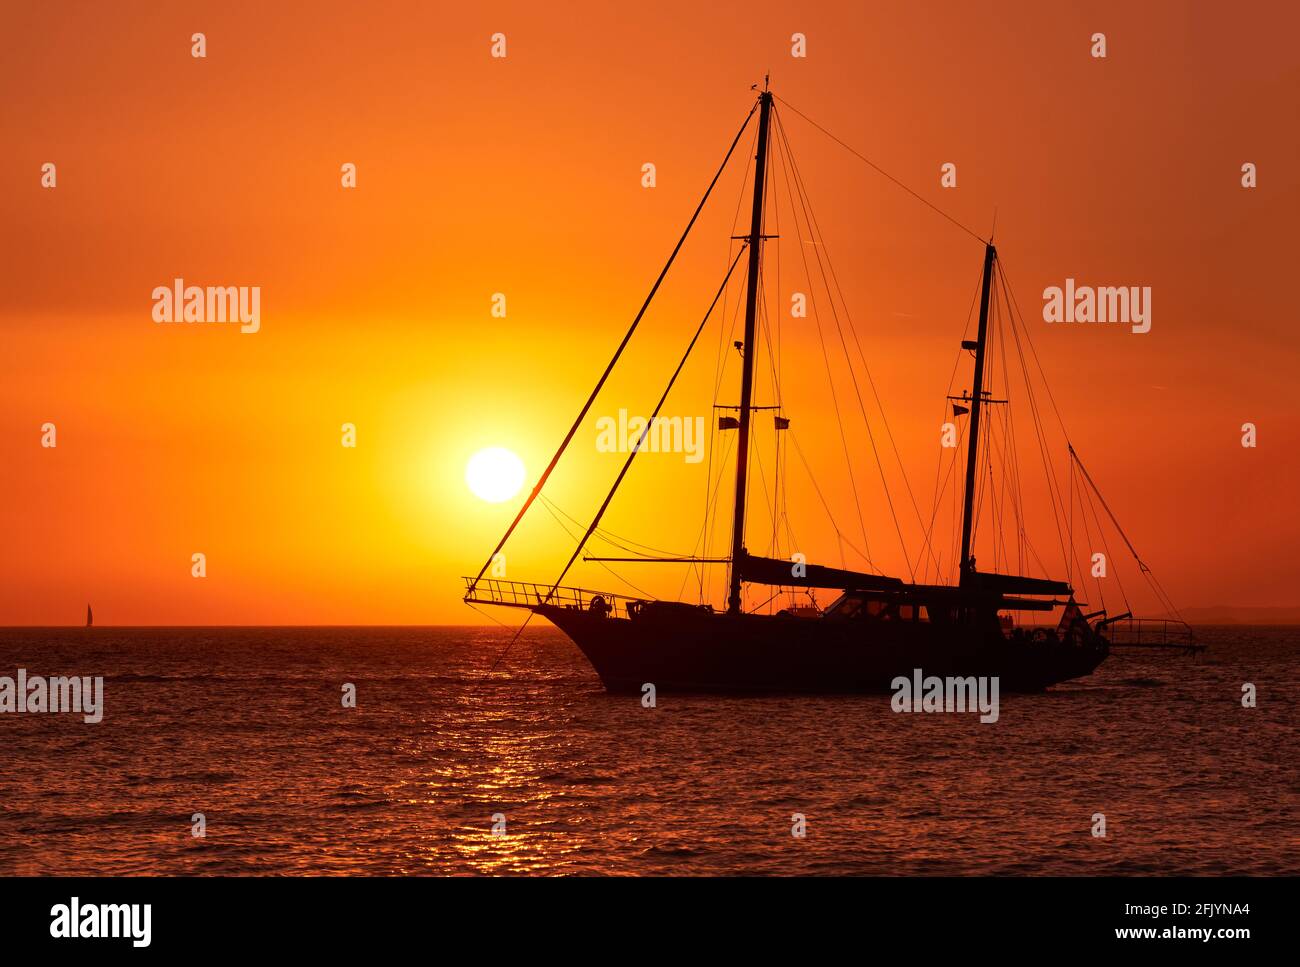 Vue rapprochée de la silhouette du bateau à voile avec voiles contre le  soleil au coucher du soleil, reflet du soleil sur les eaux de mer. Paysage  marin romantique Photo Stock -